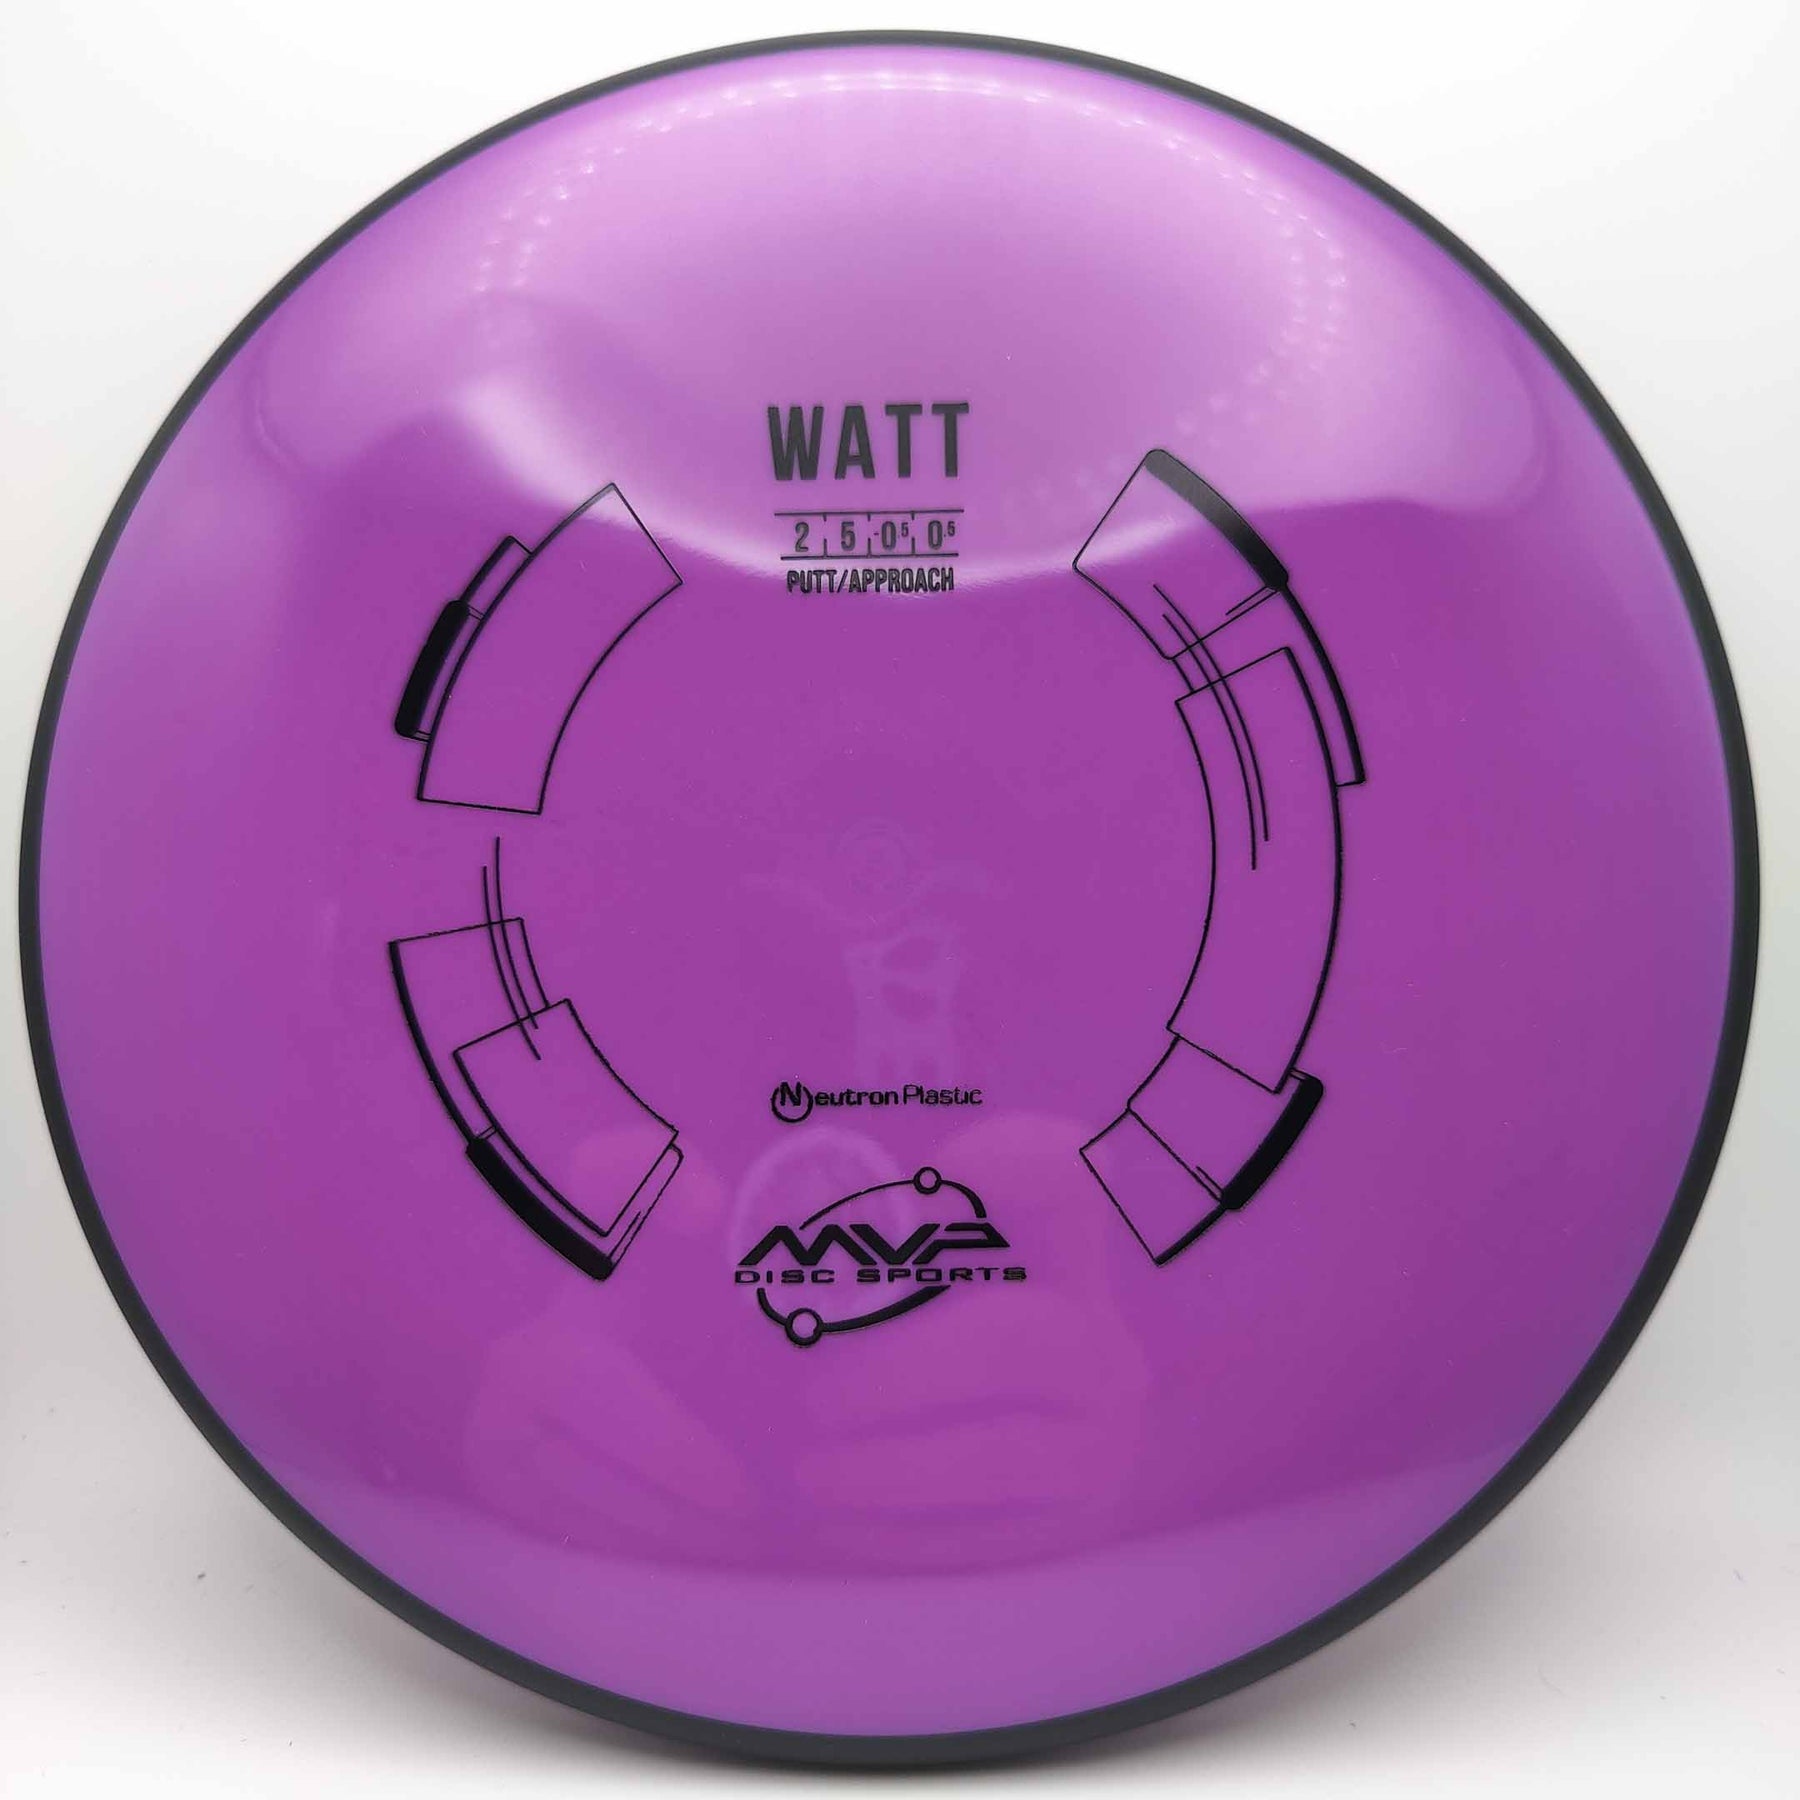 MVP Watt - Neutron Stock